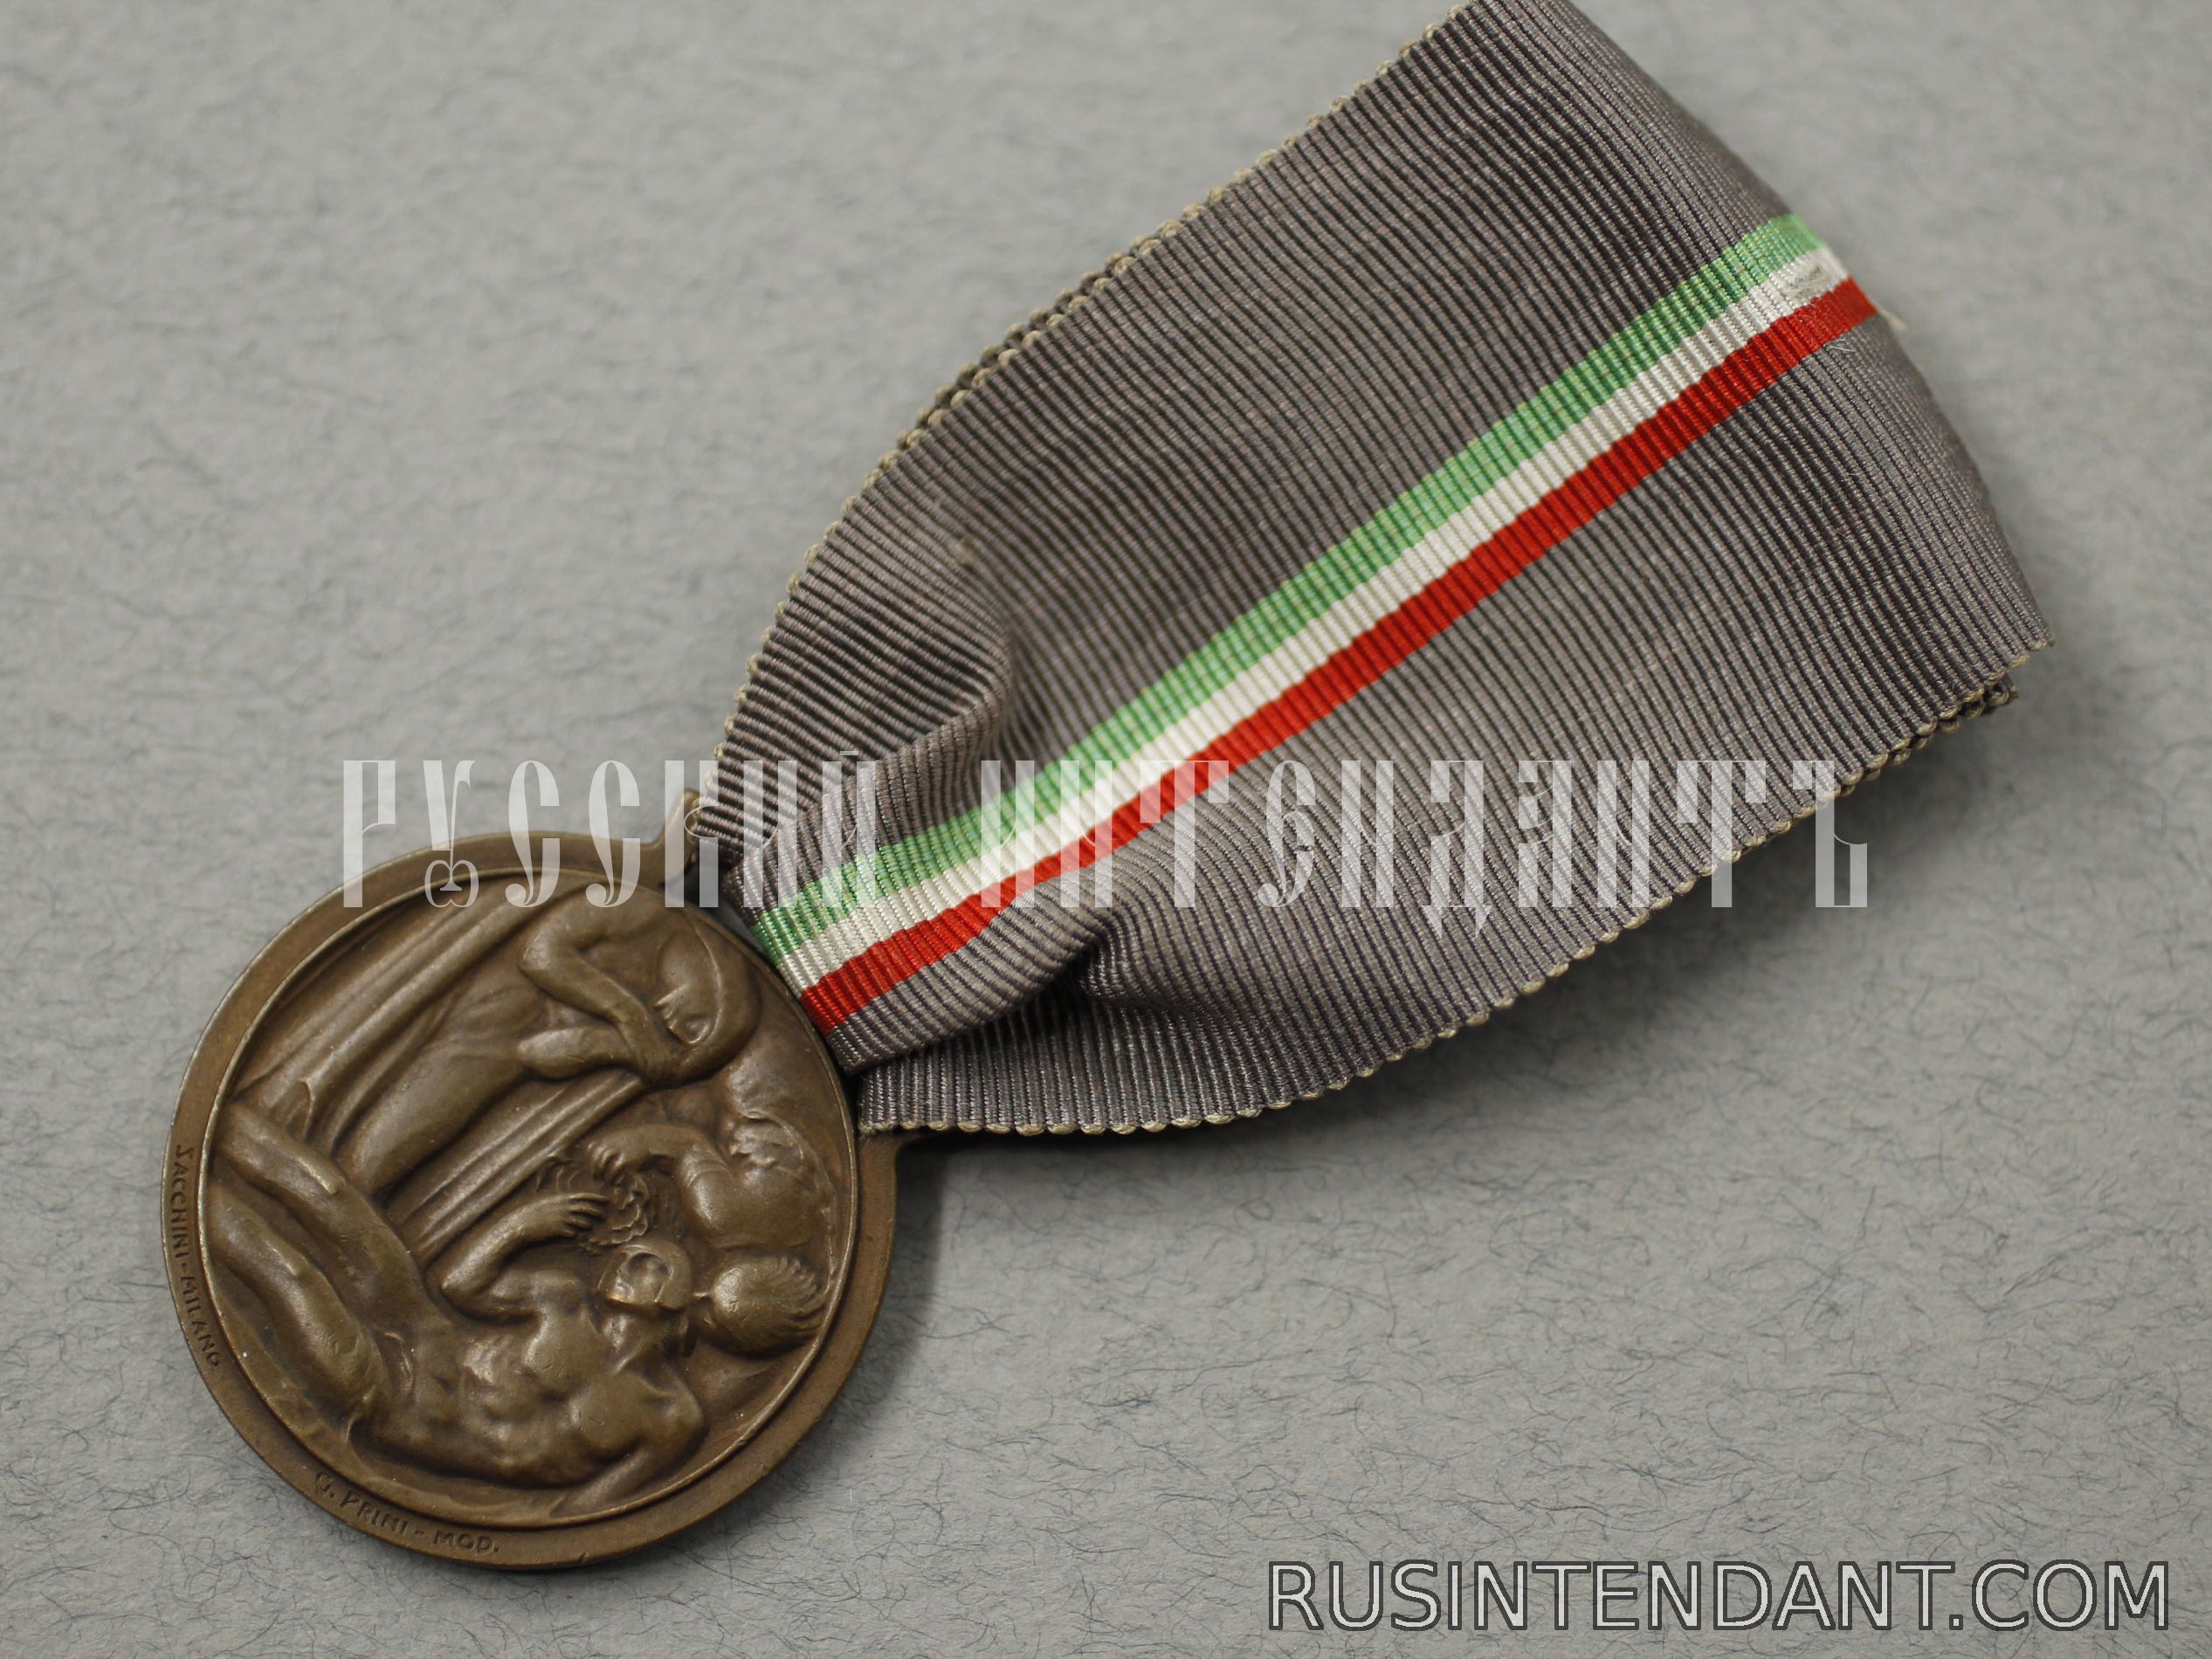 Фото 3: Италия "Медаль Национальной благодарности" 